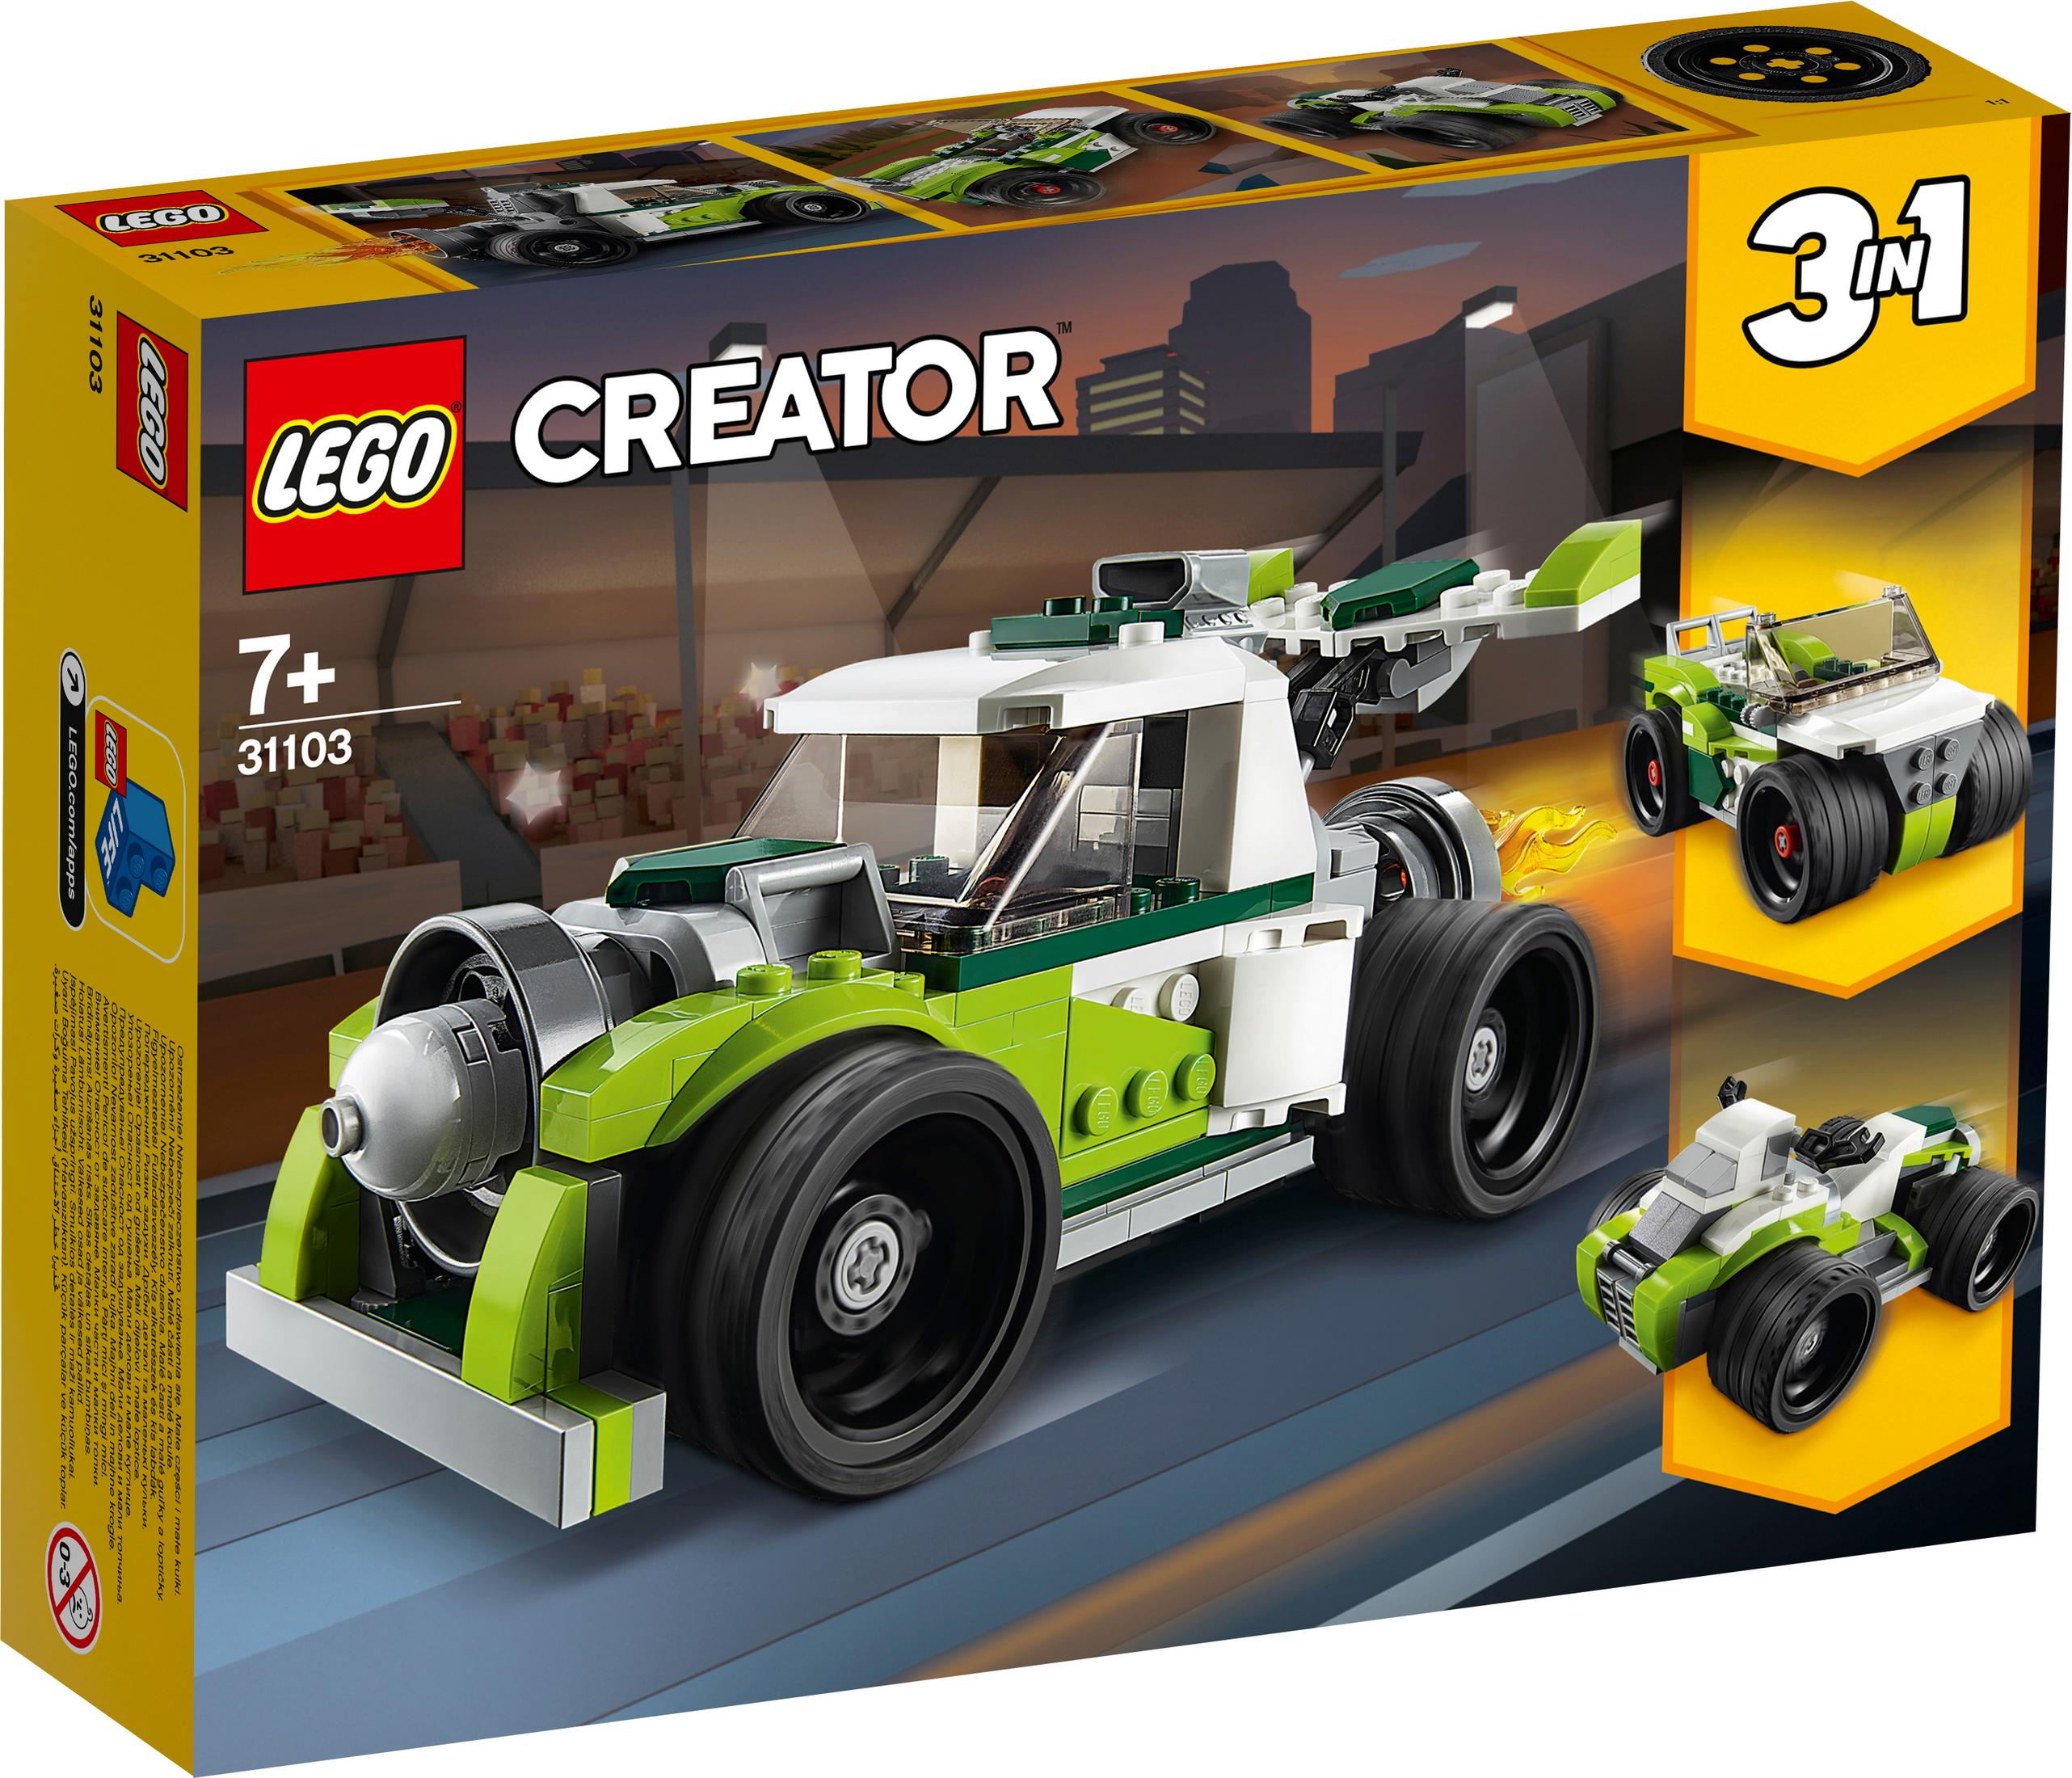 RAKETEN-TRUCK LEGO Bausatz, Mehrfarbig 31103